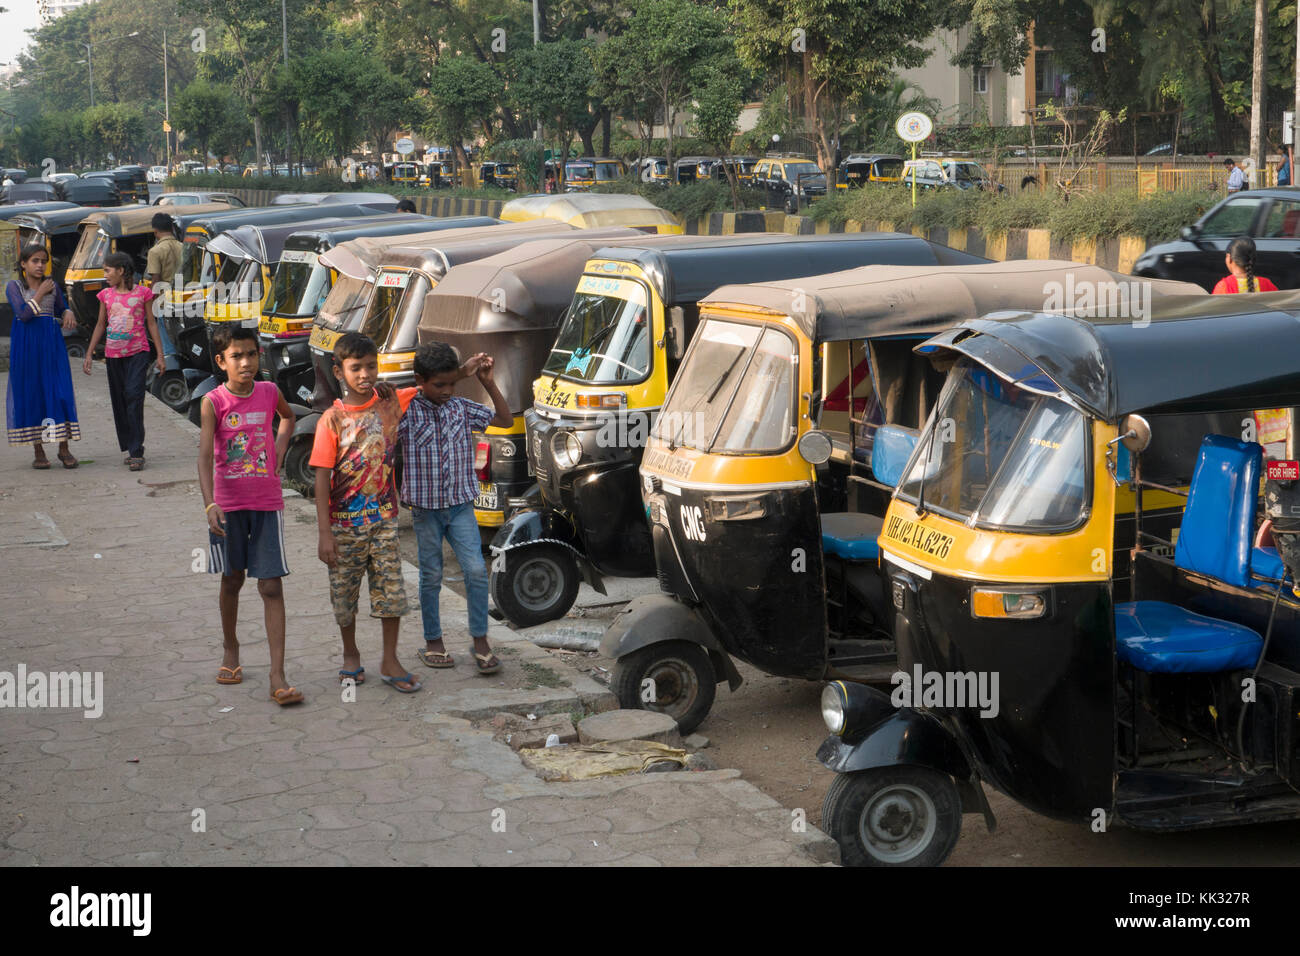 Children stand next to parked auto rickshaws (tuk tuk) in Versova, Mumbai, India Stock Photo